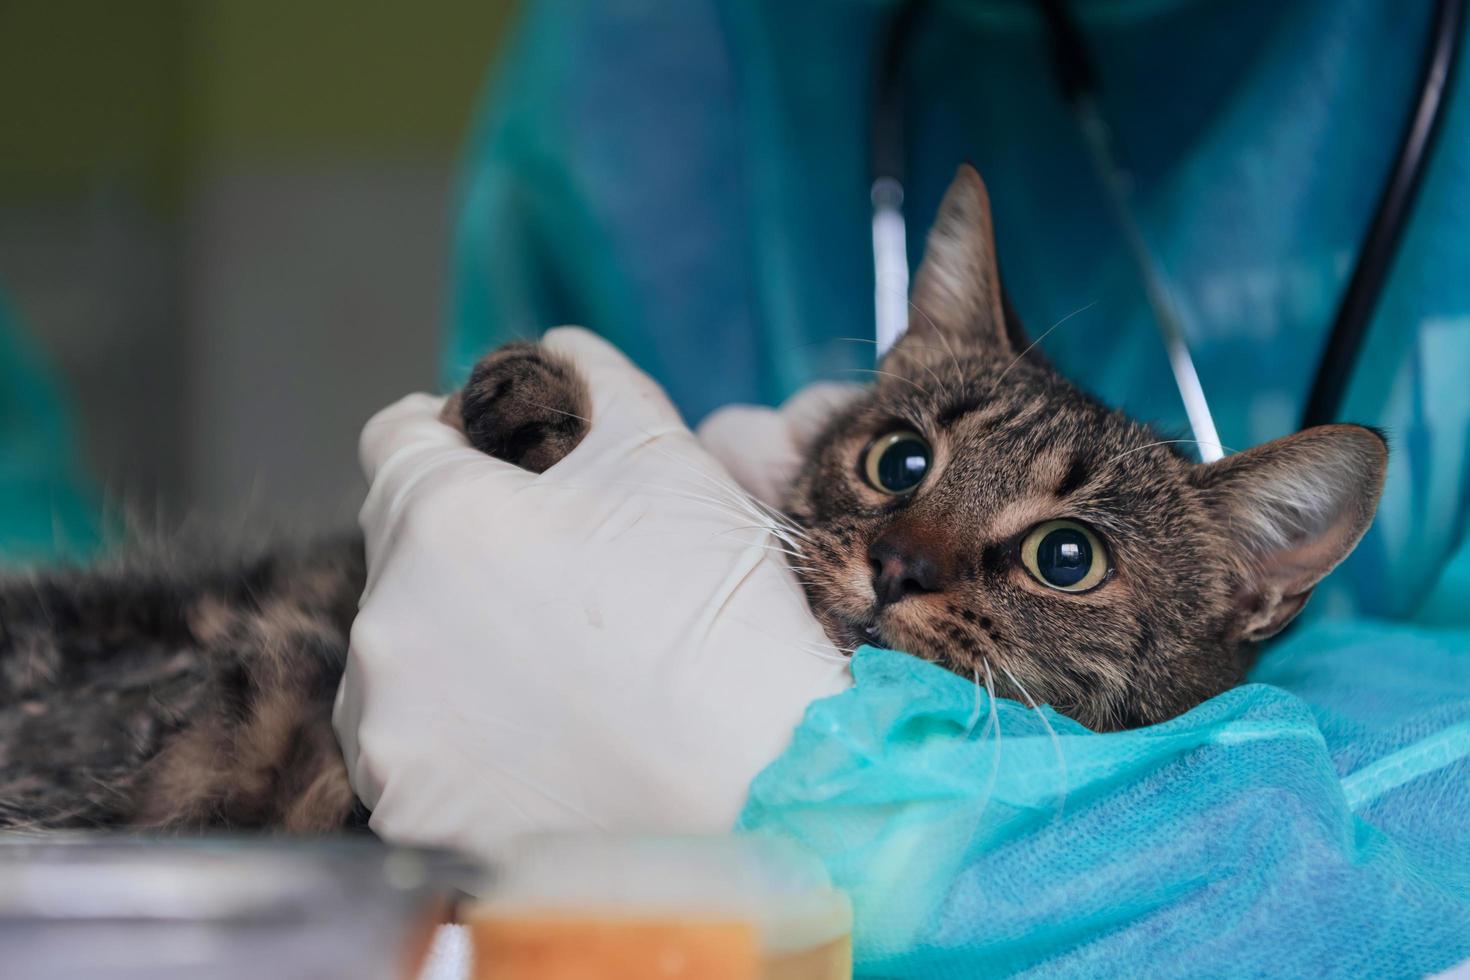 vrouwelijke chirurg of arts in het dierenziekenhuis die een schattige zieke kat voorbereidt op een operatie, waarbij druppels in kattenogen worden gedaan om te beschermen tijdens de behandeling. foto